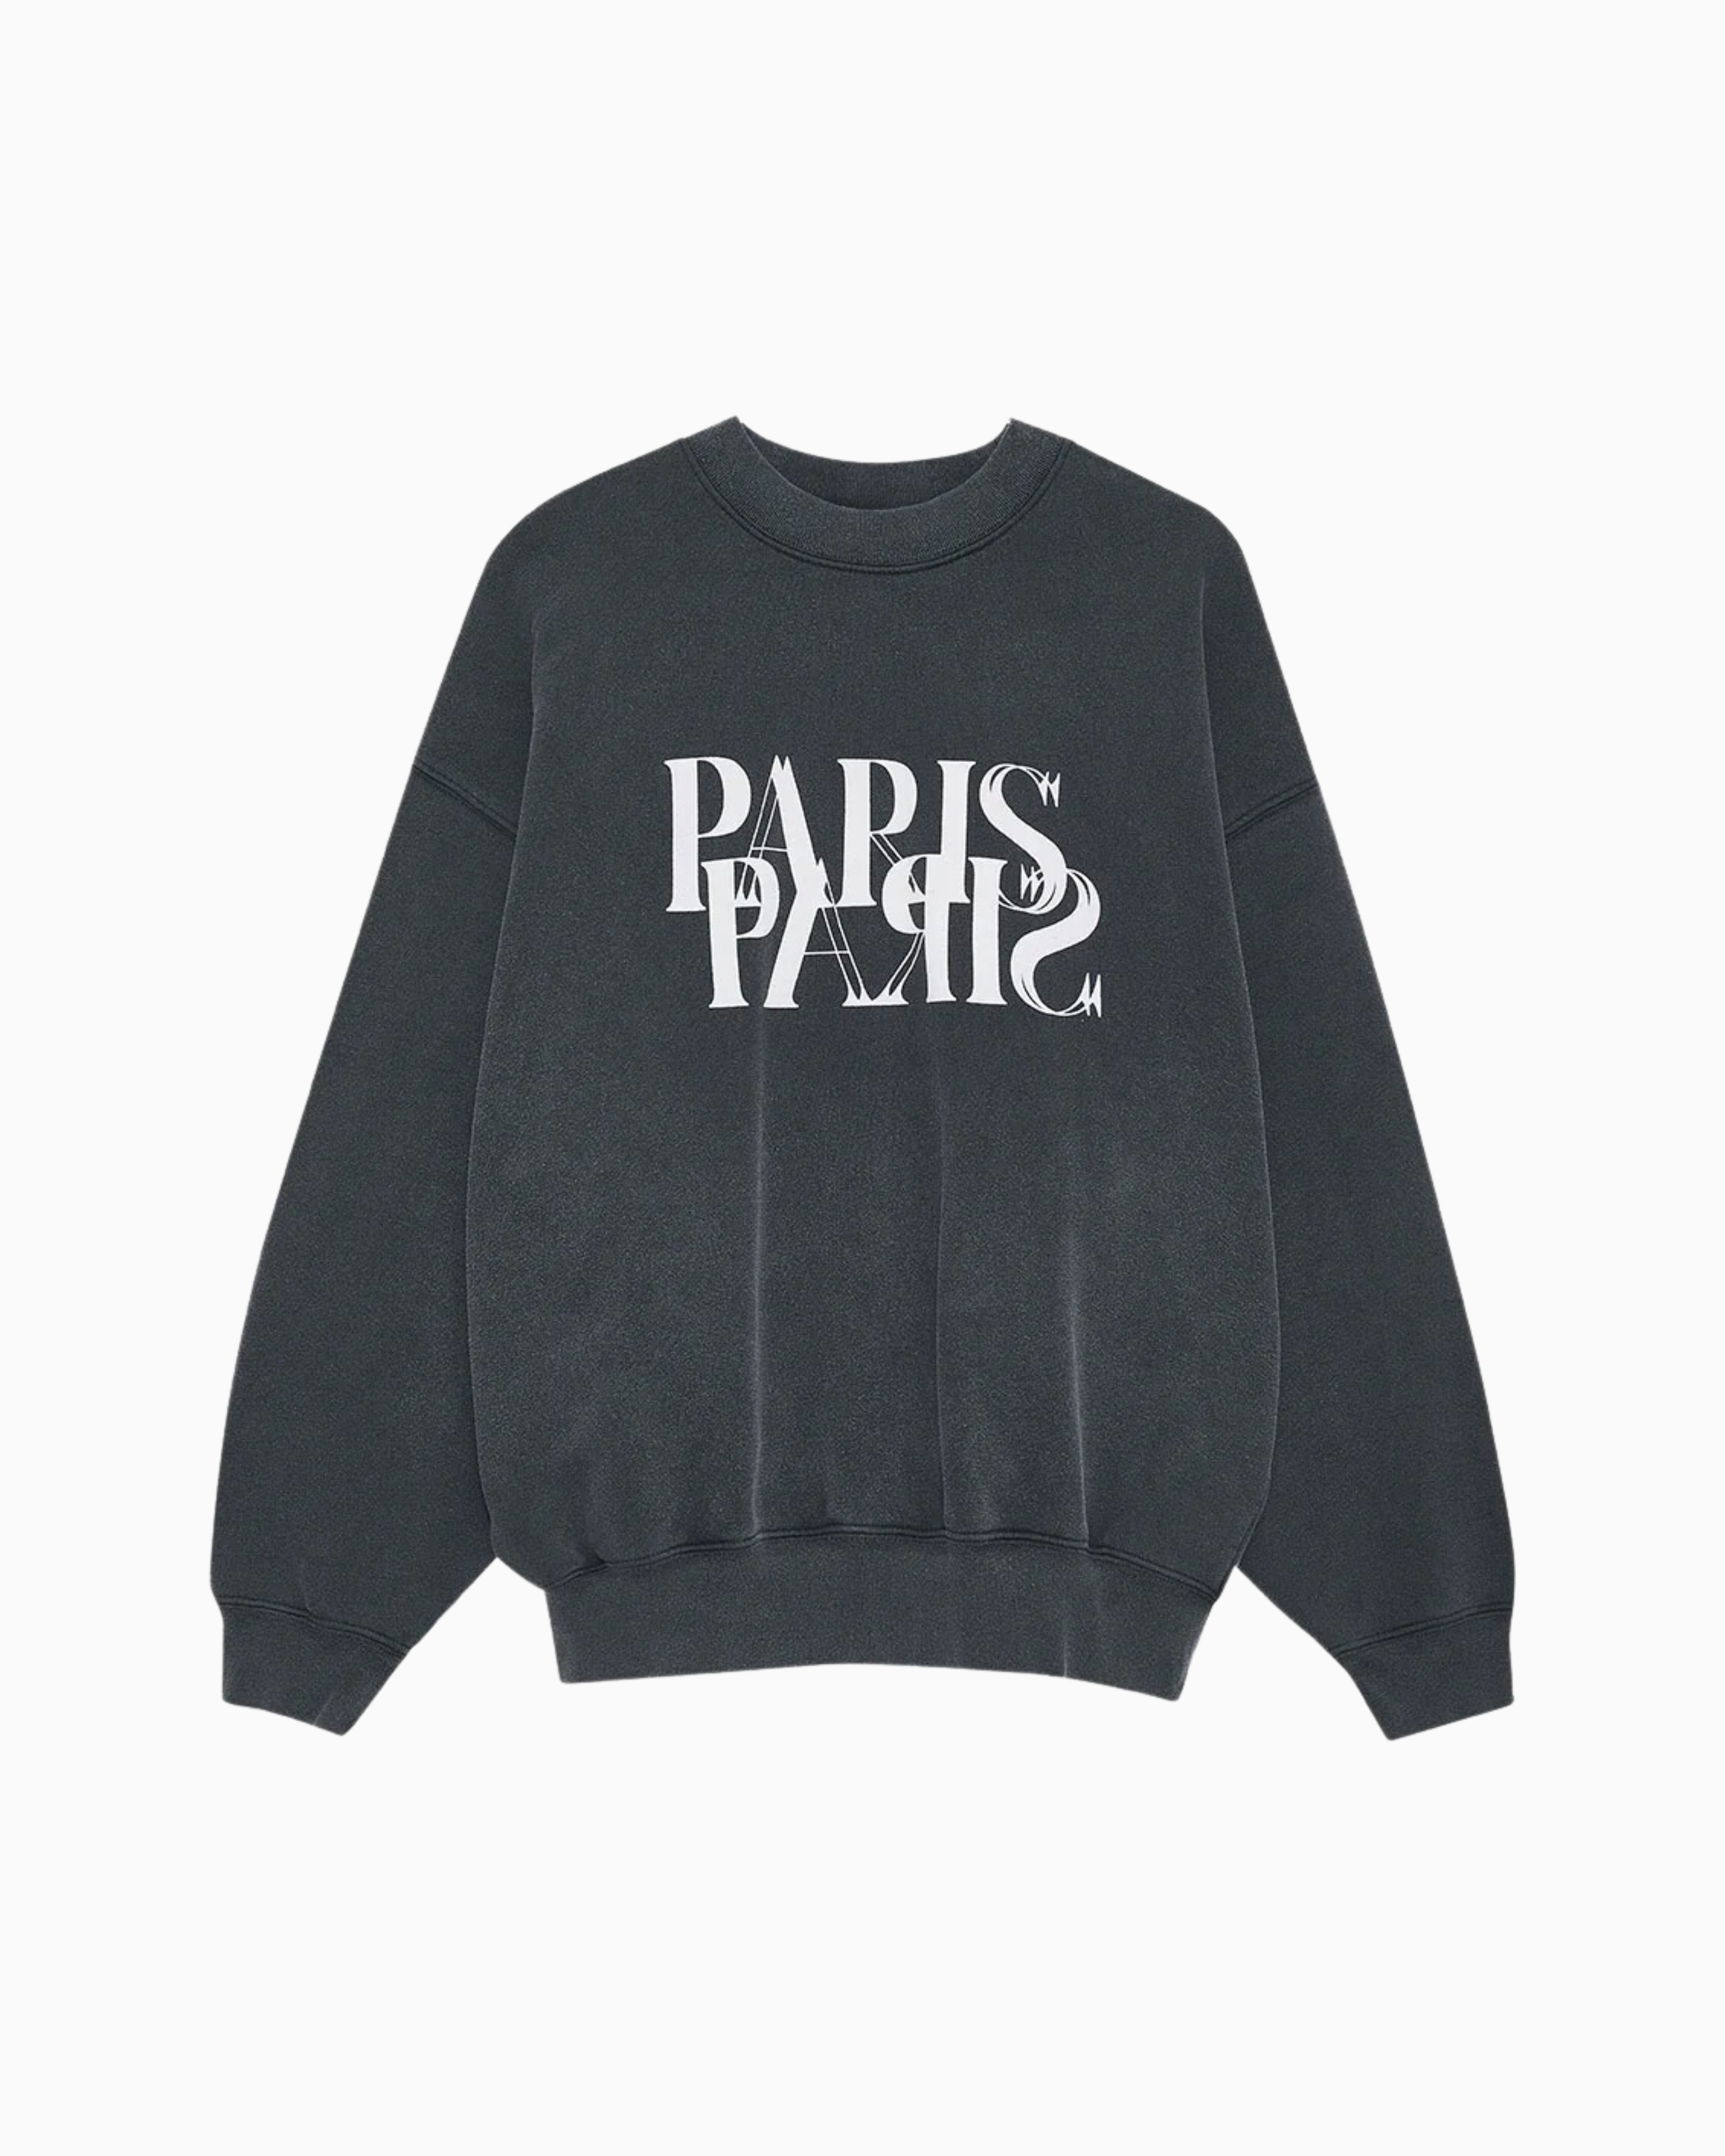 Anine Bing Jaci Paris Sweatshirt in Washed Black